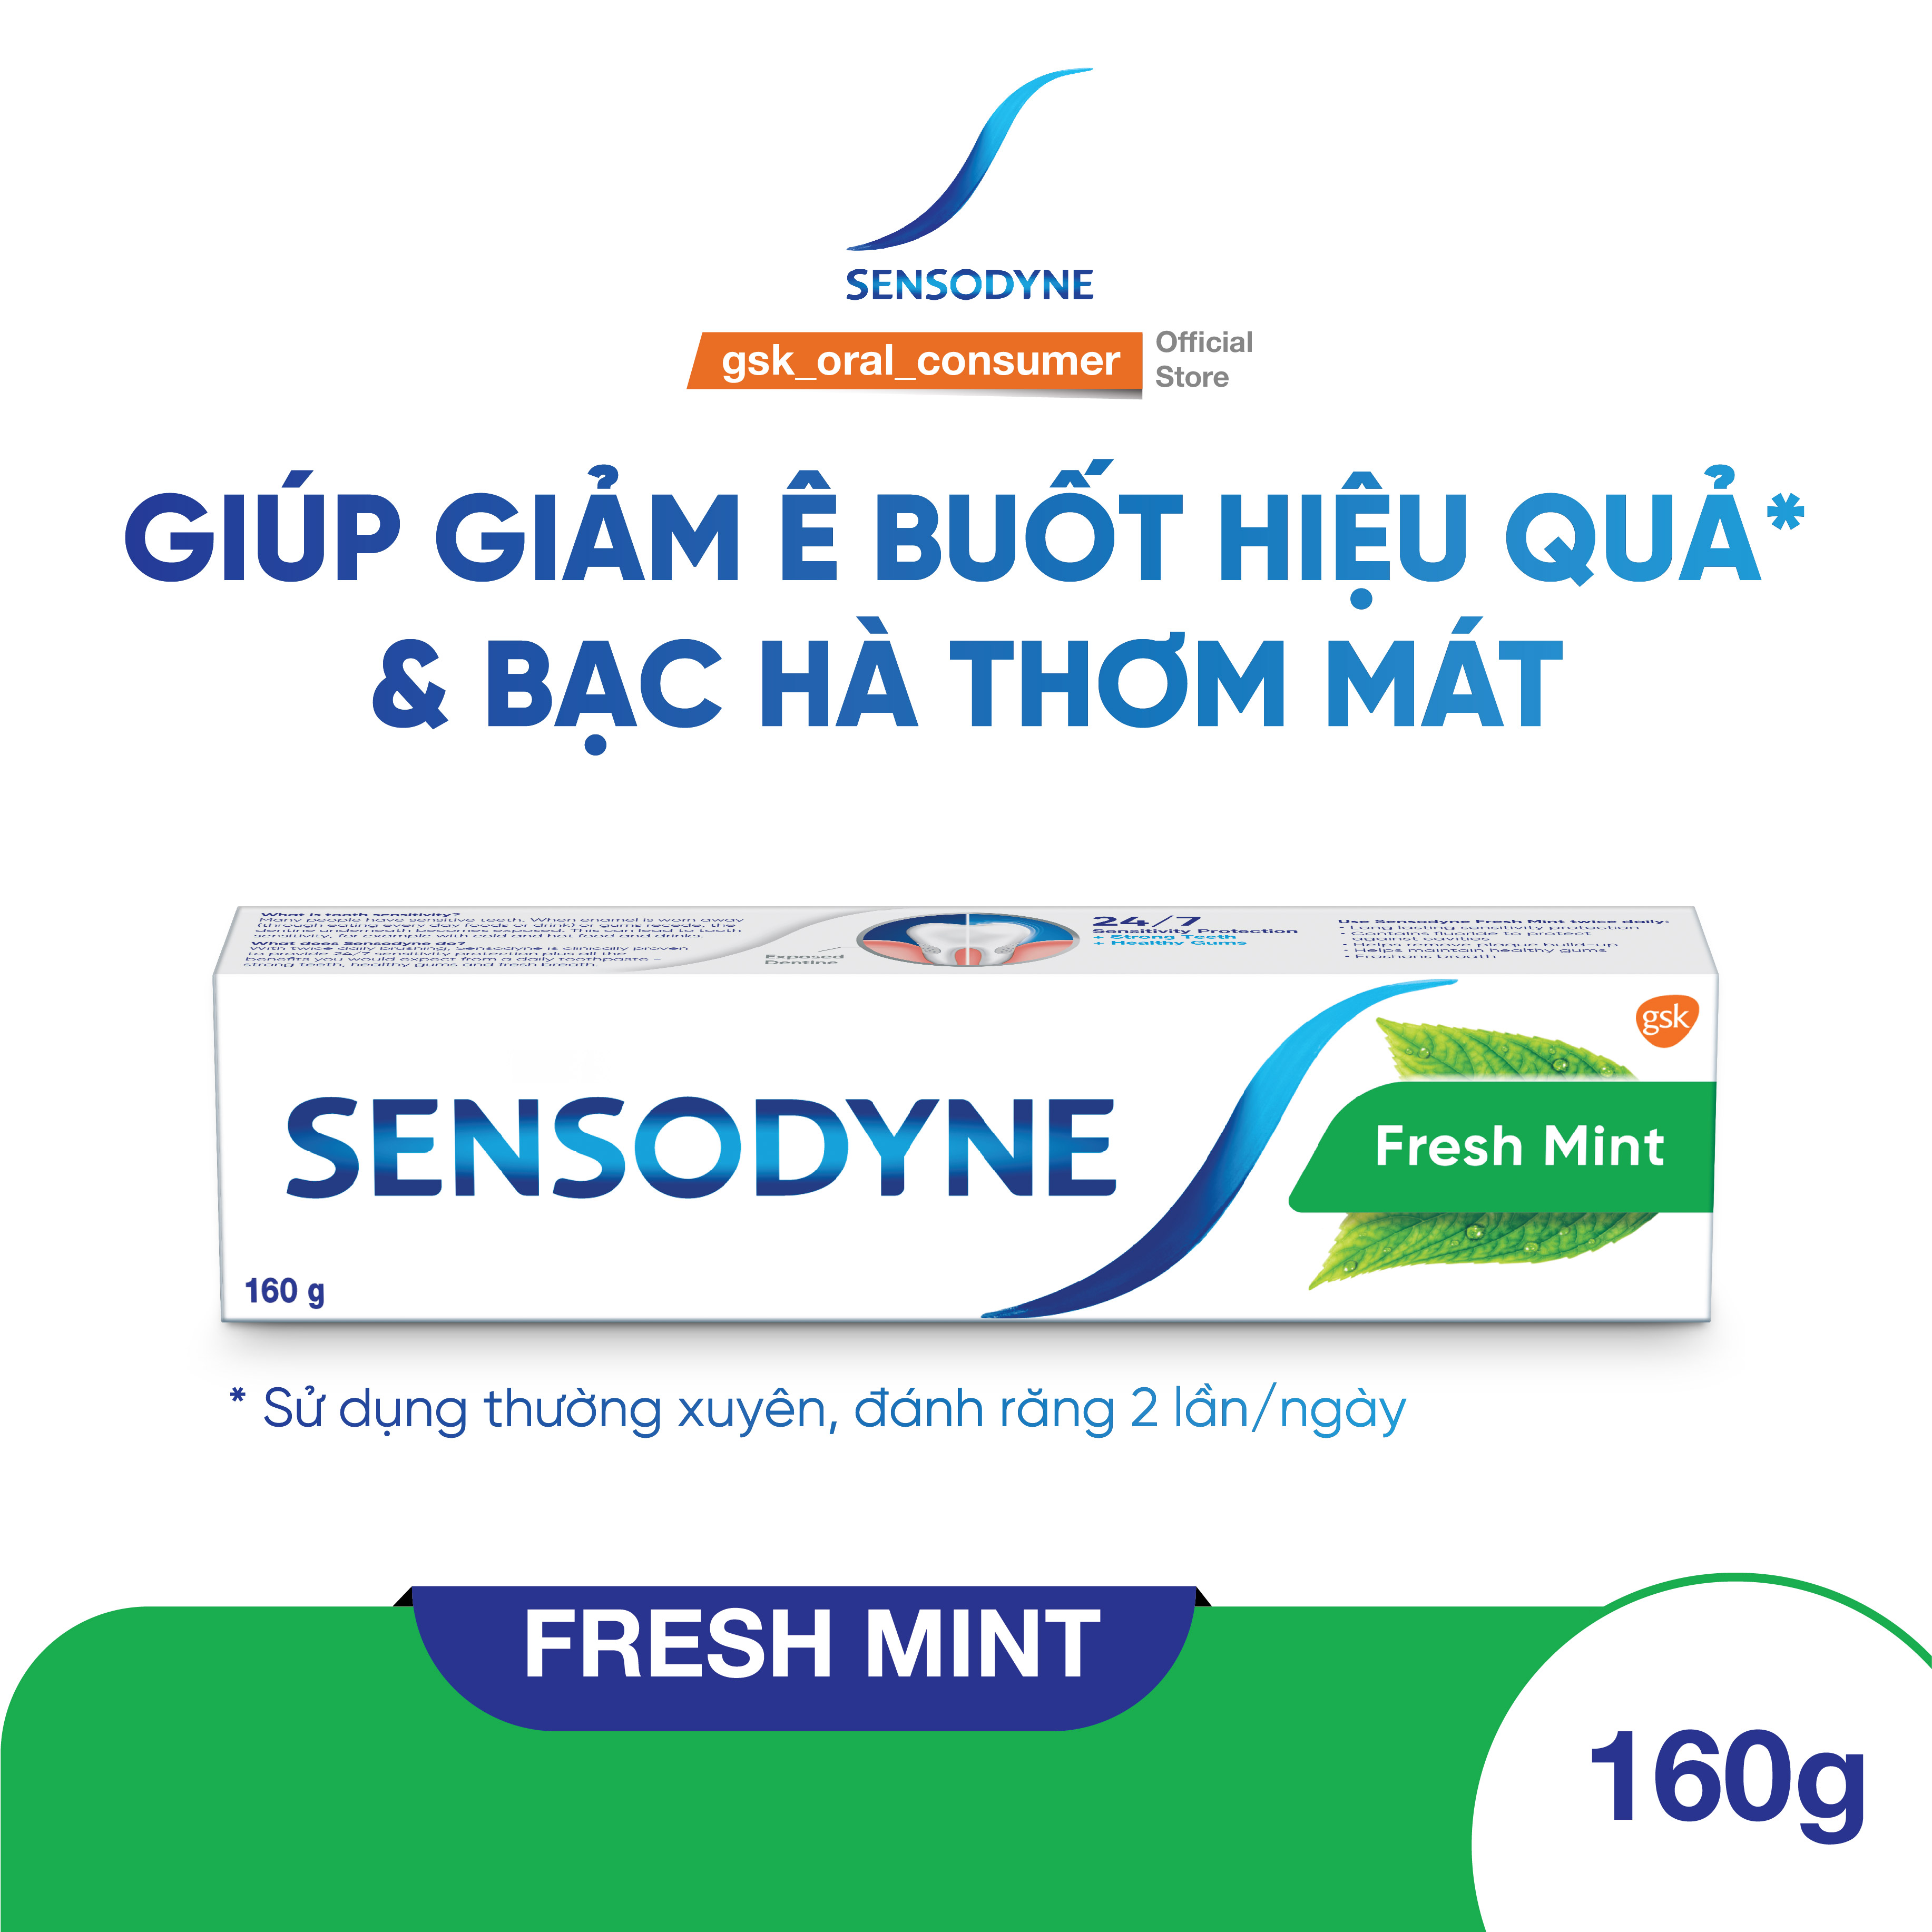 Bộ 3 Kem đánh răng SENSODYNE Fresh Mint 160g giúp giảm ê buốt hiệu quả với hương bạc hà thơm mát